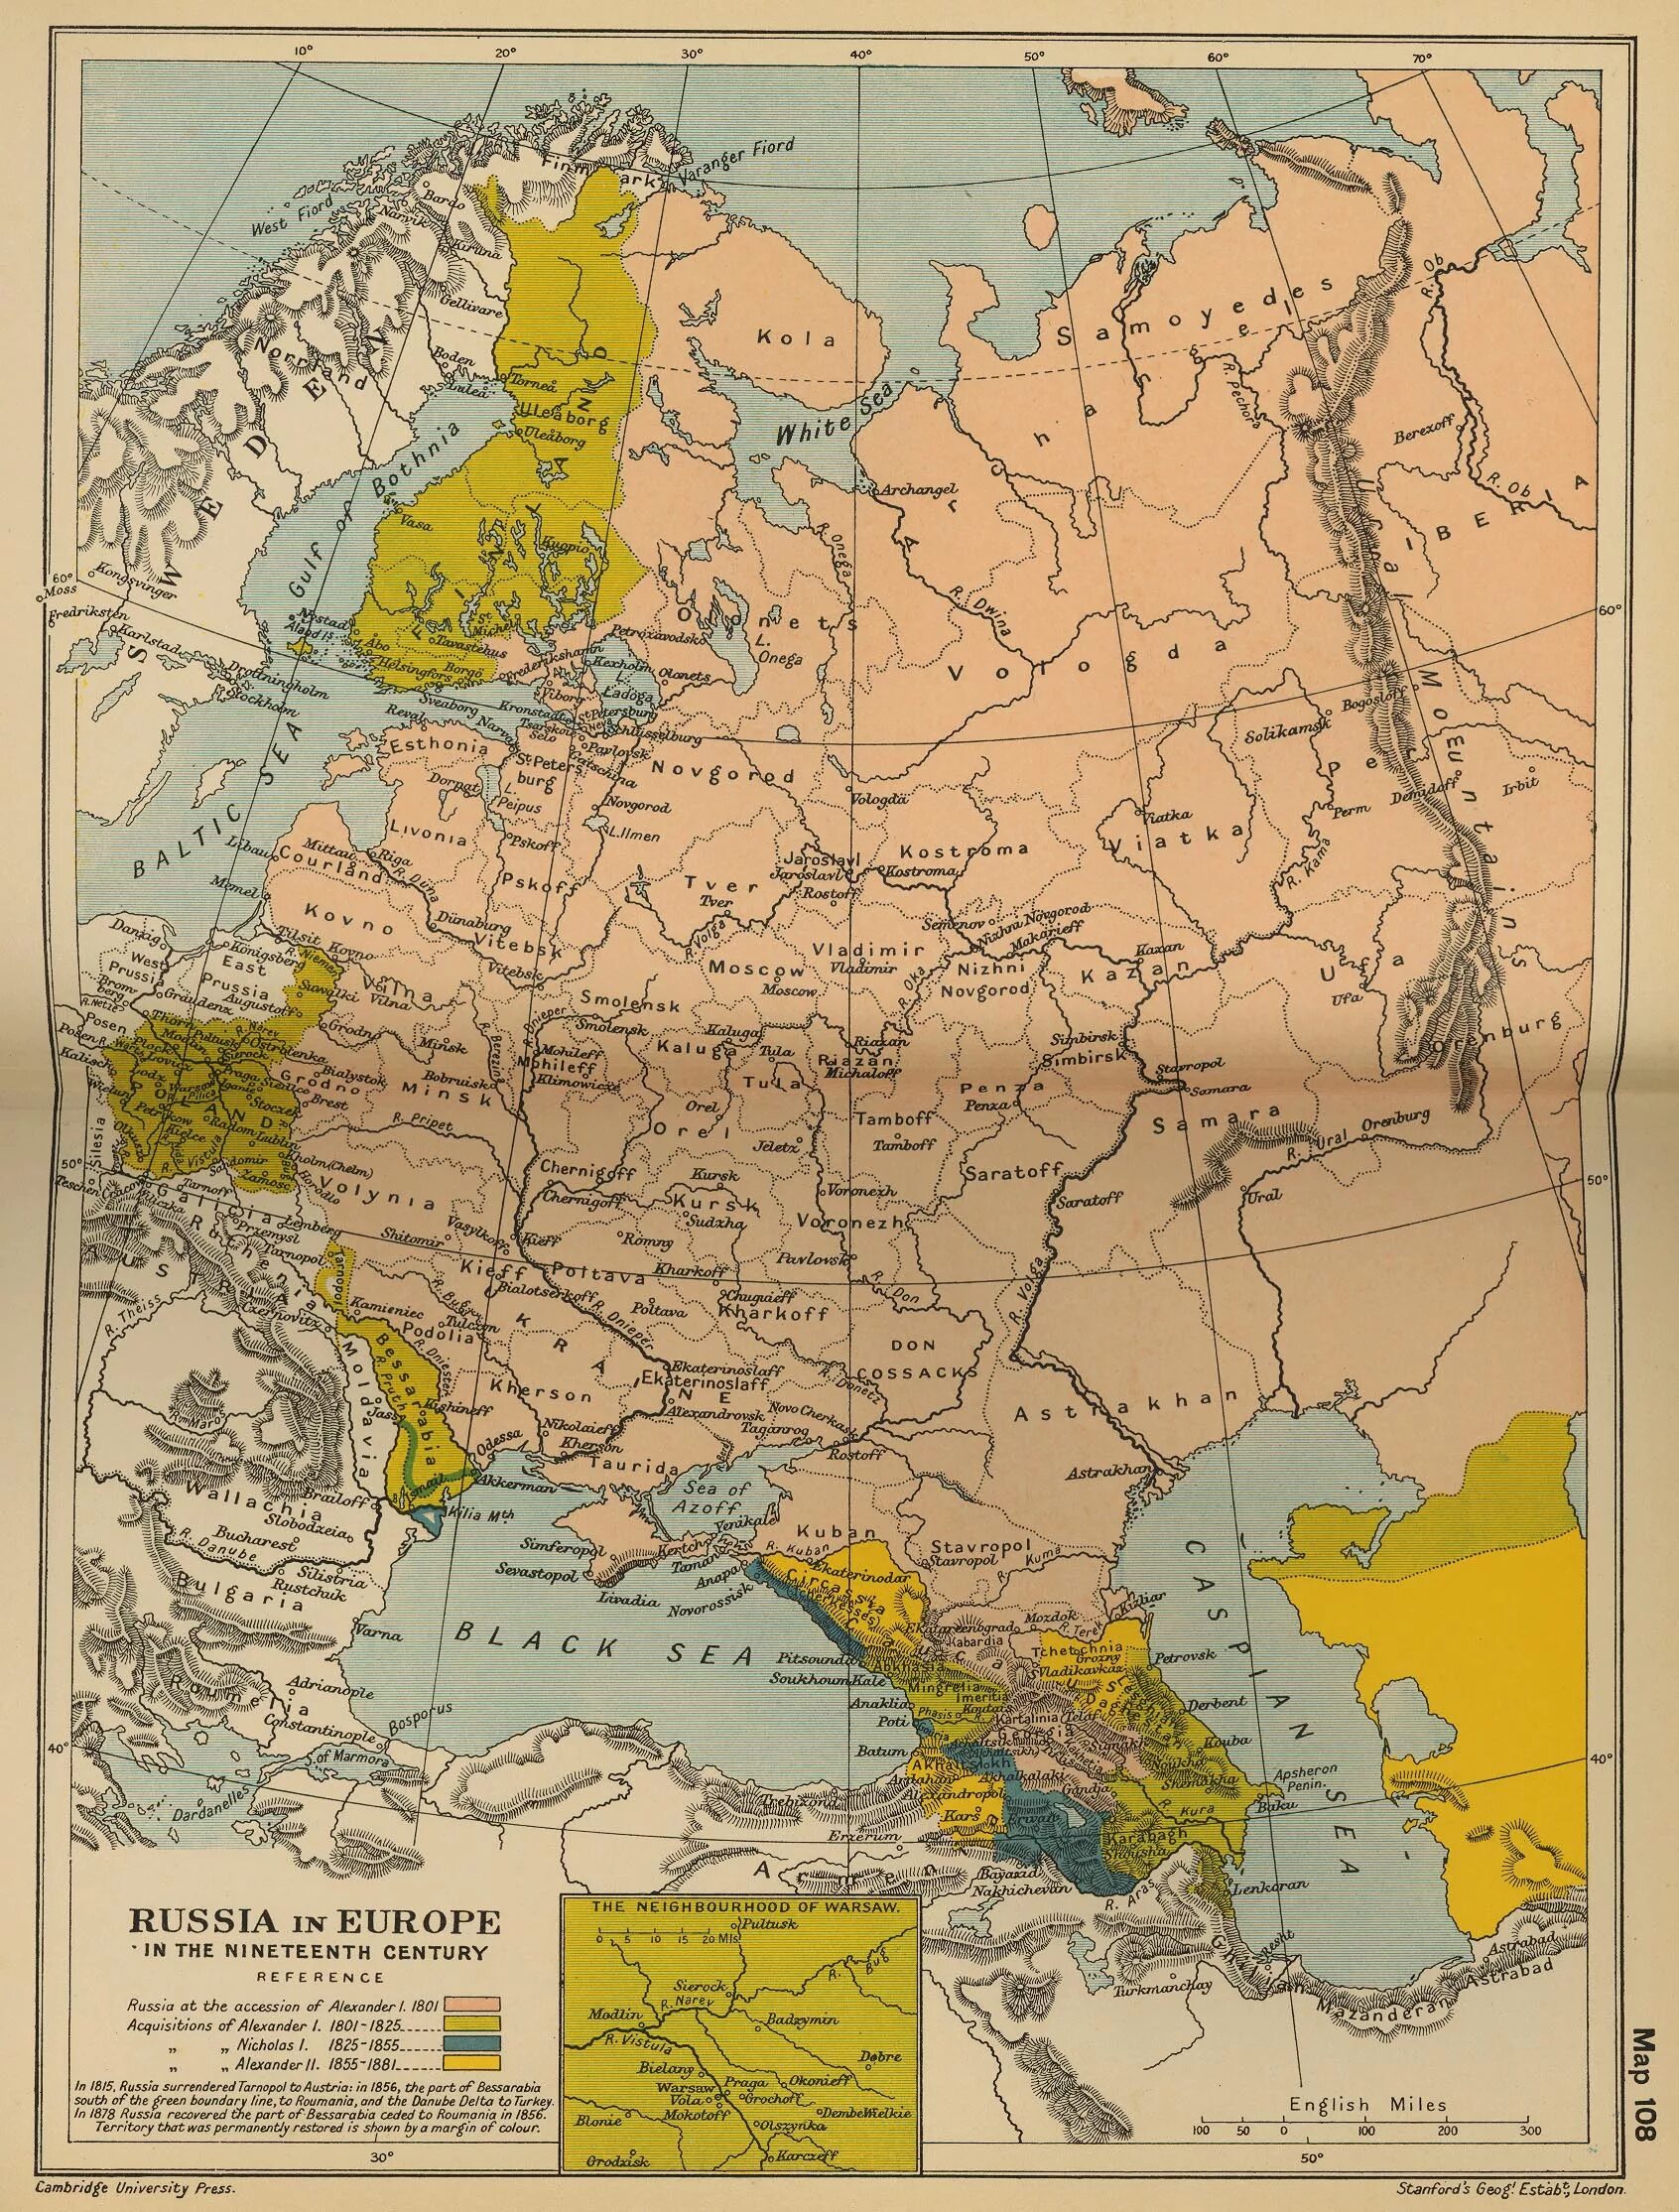 Карта Российской империи 19 века Европа. Карта Российской империи 19 век. Карта Европы , Российской империи 18-19 век. Карта европейской части России 19 век.